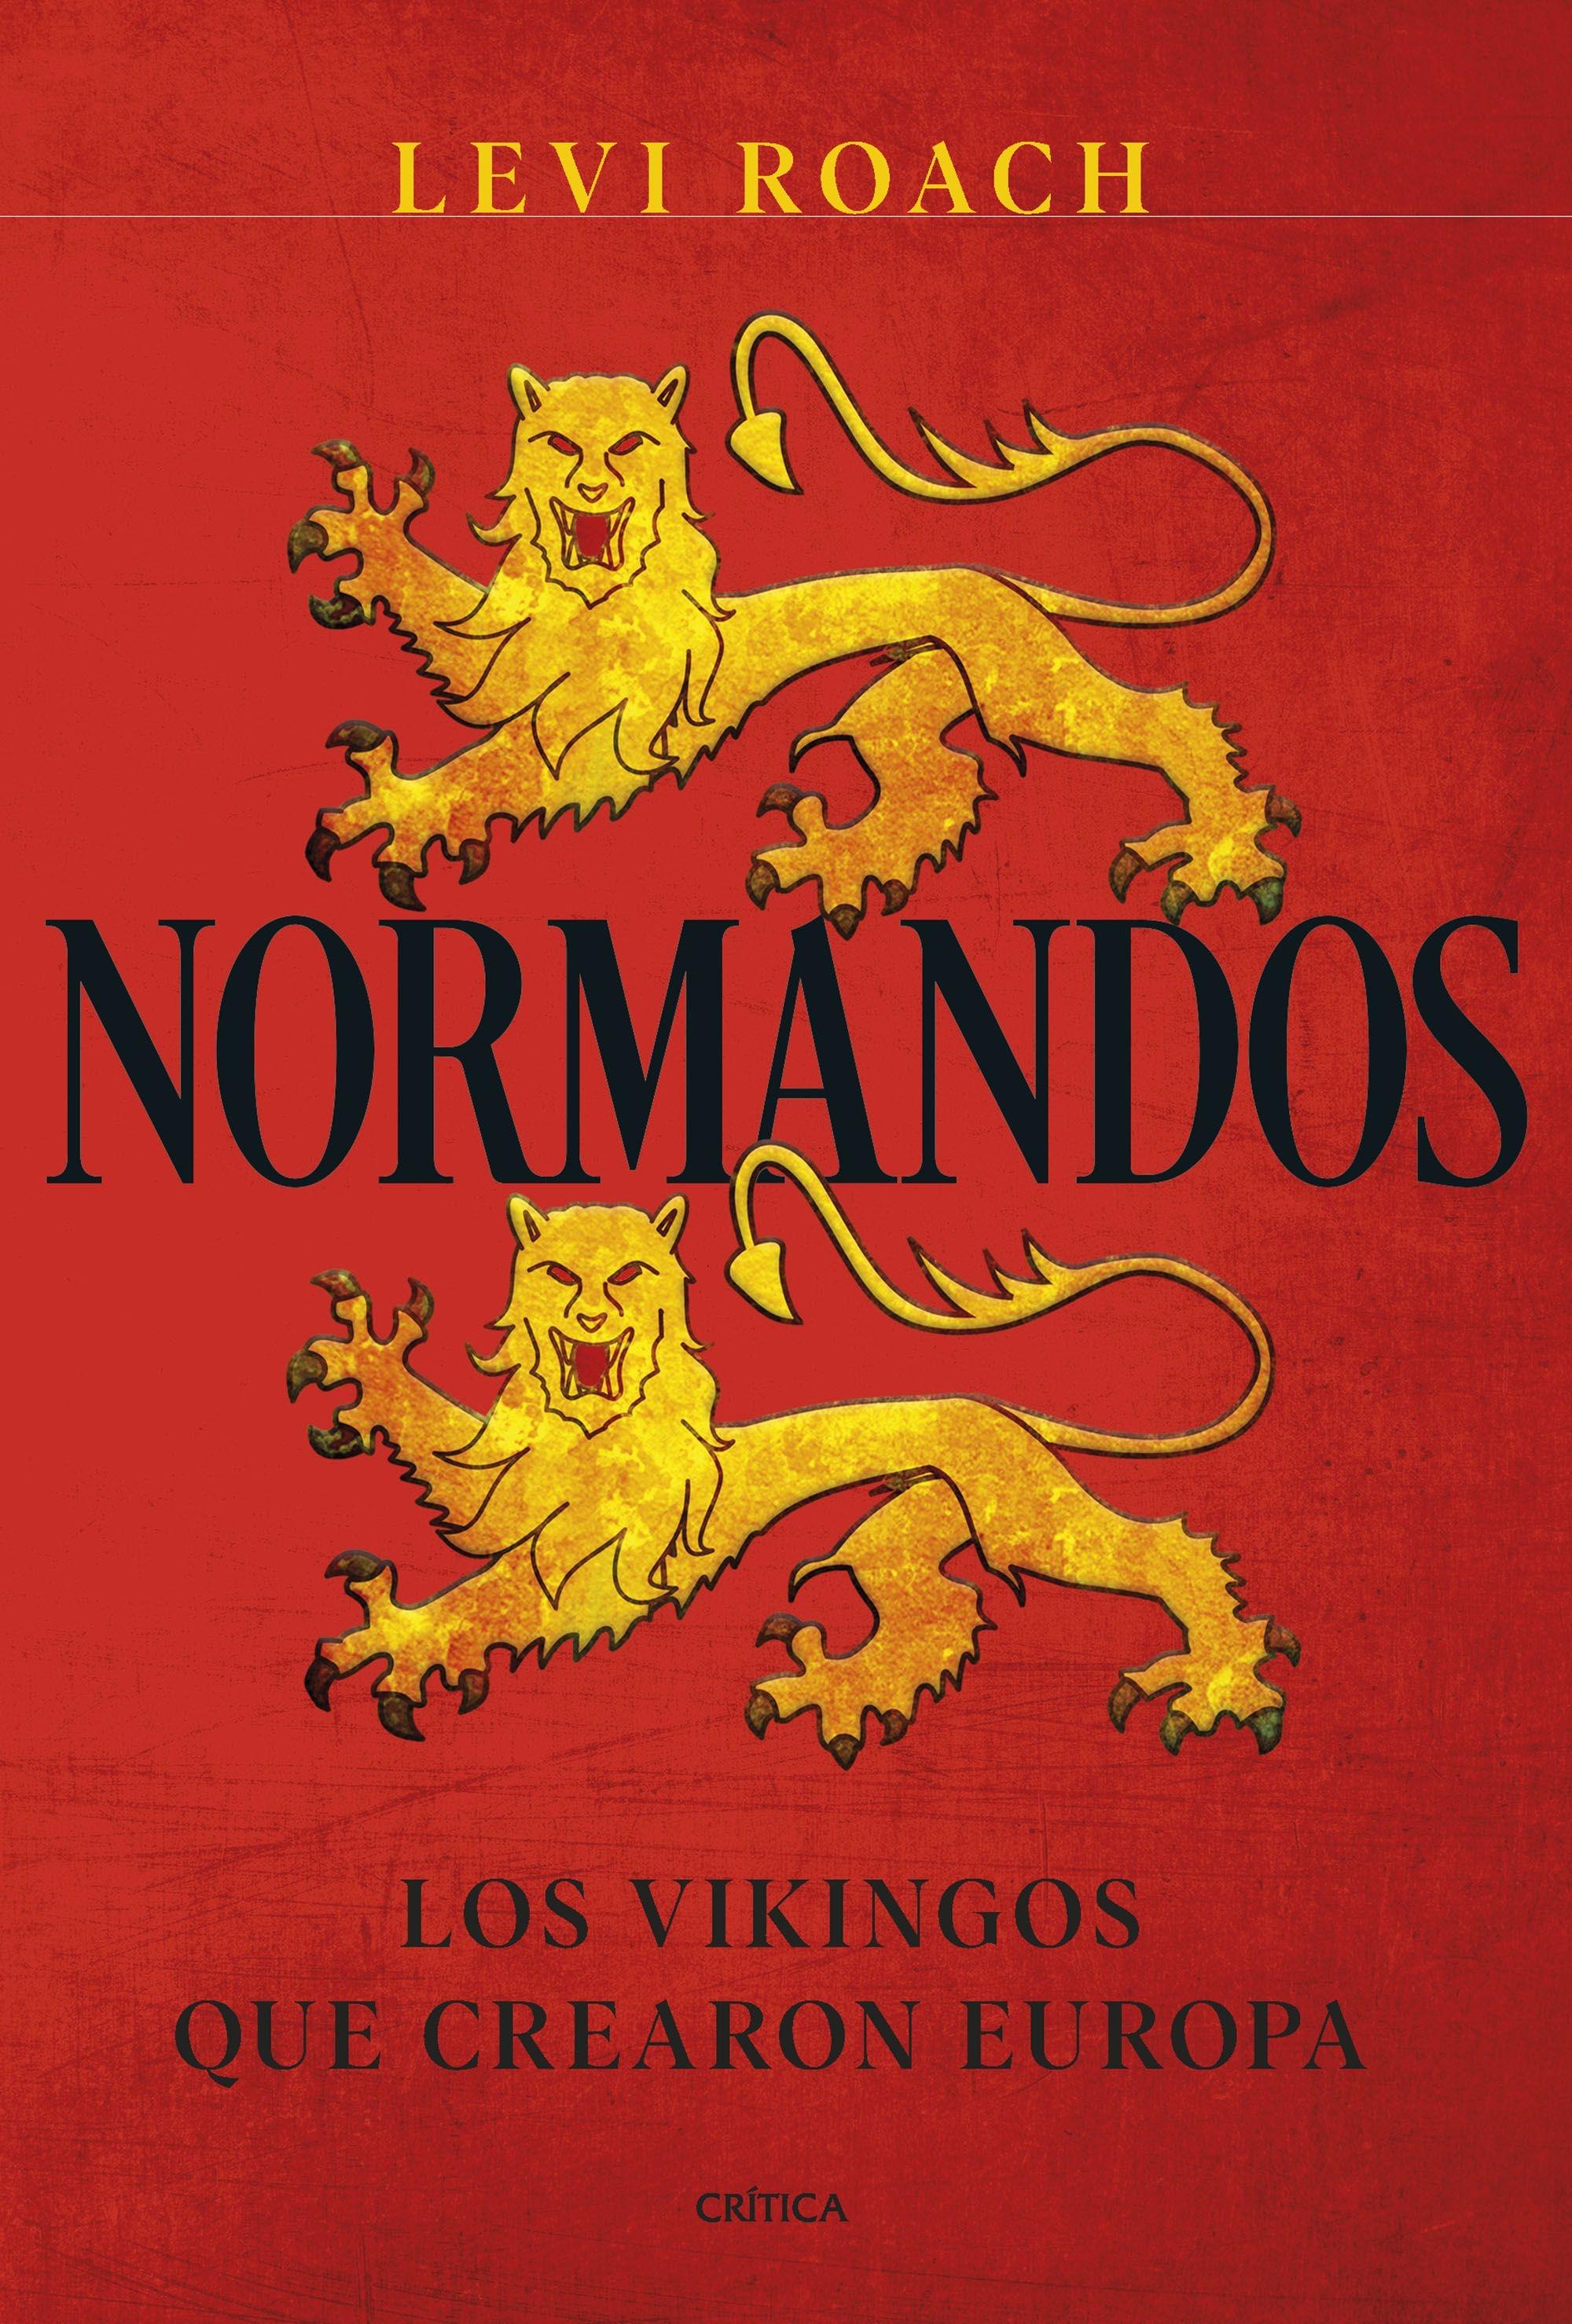 Normandos "Los vikingos que crearon Europa"